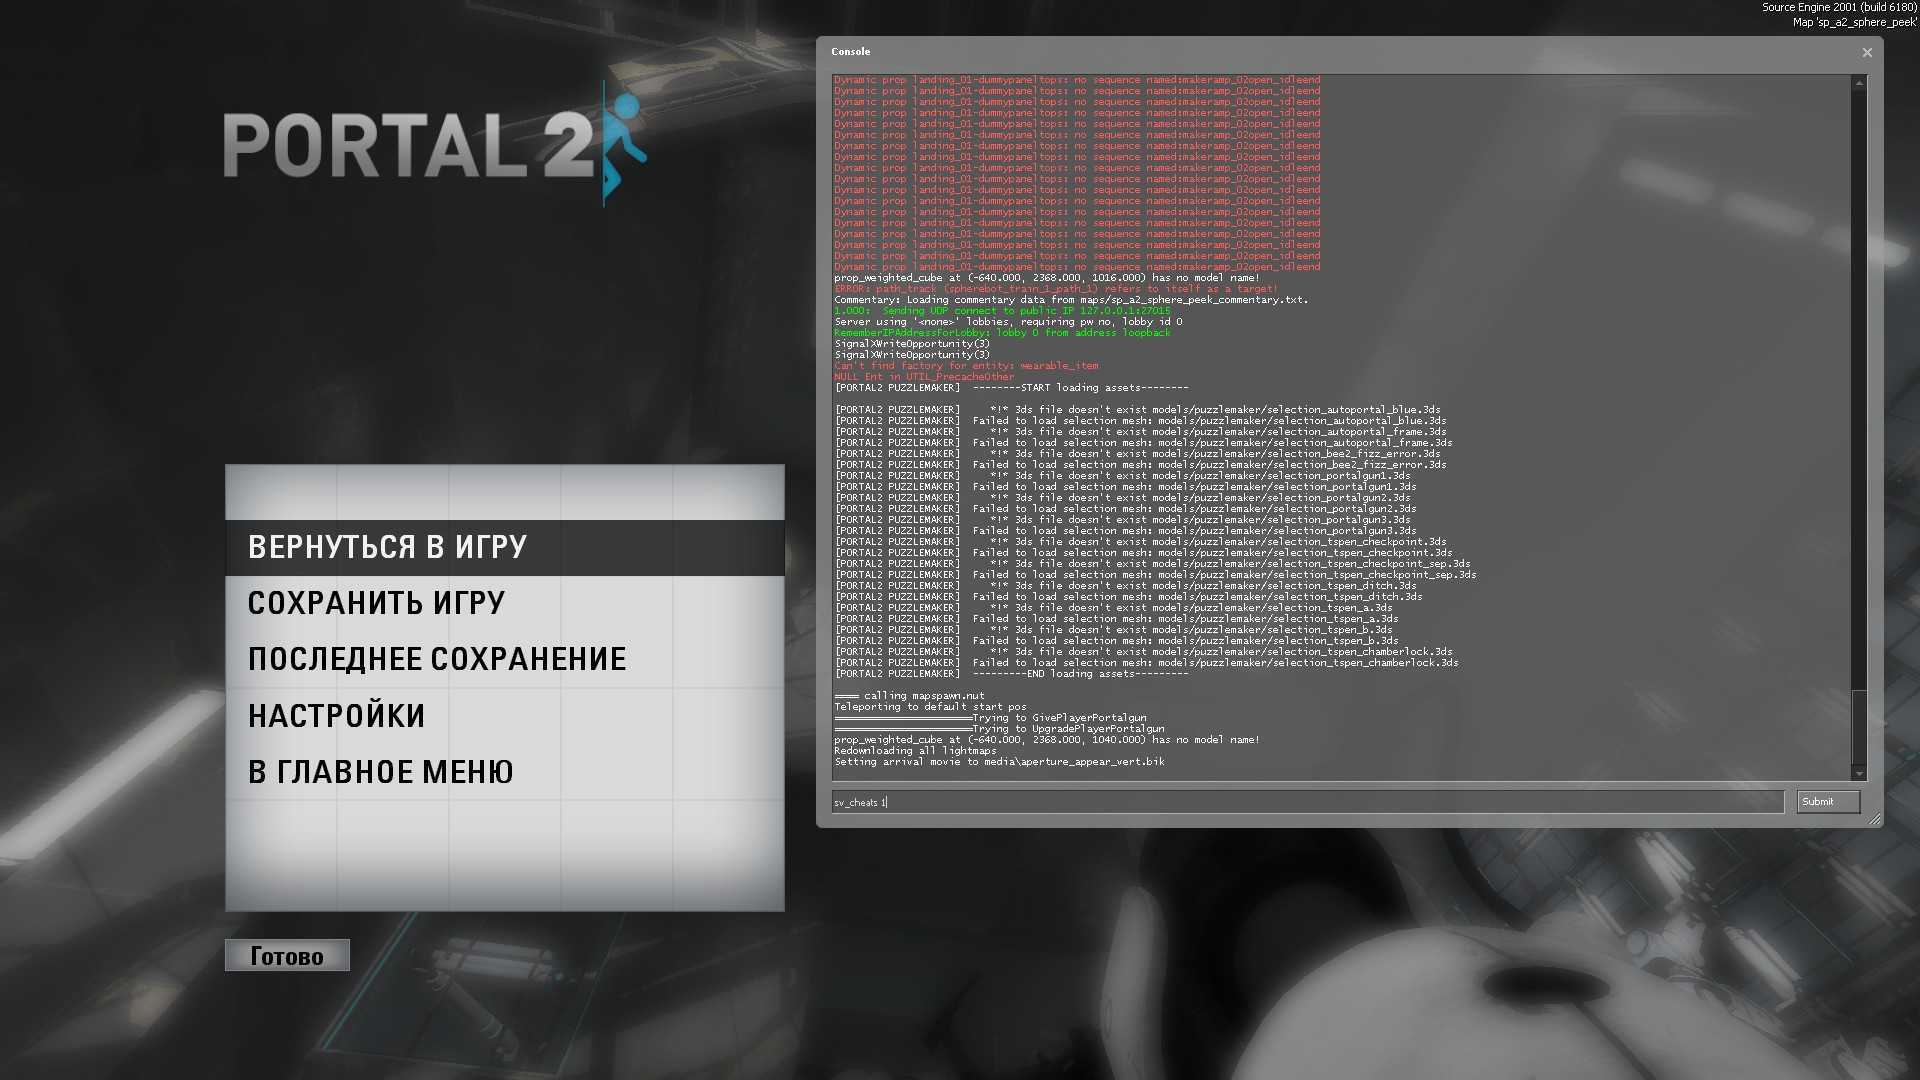 Portal 2 как включить noclip (116) фото